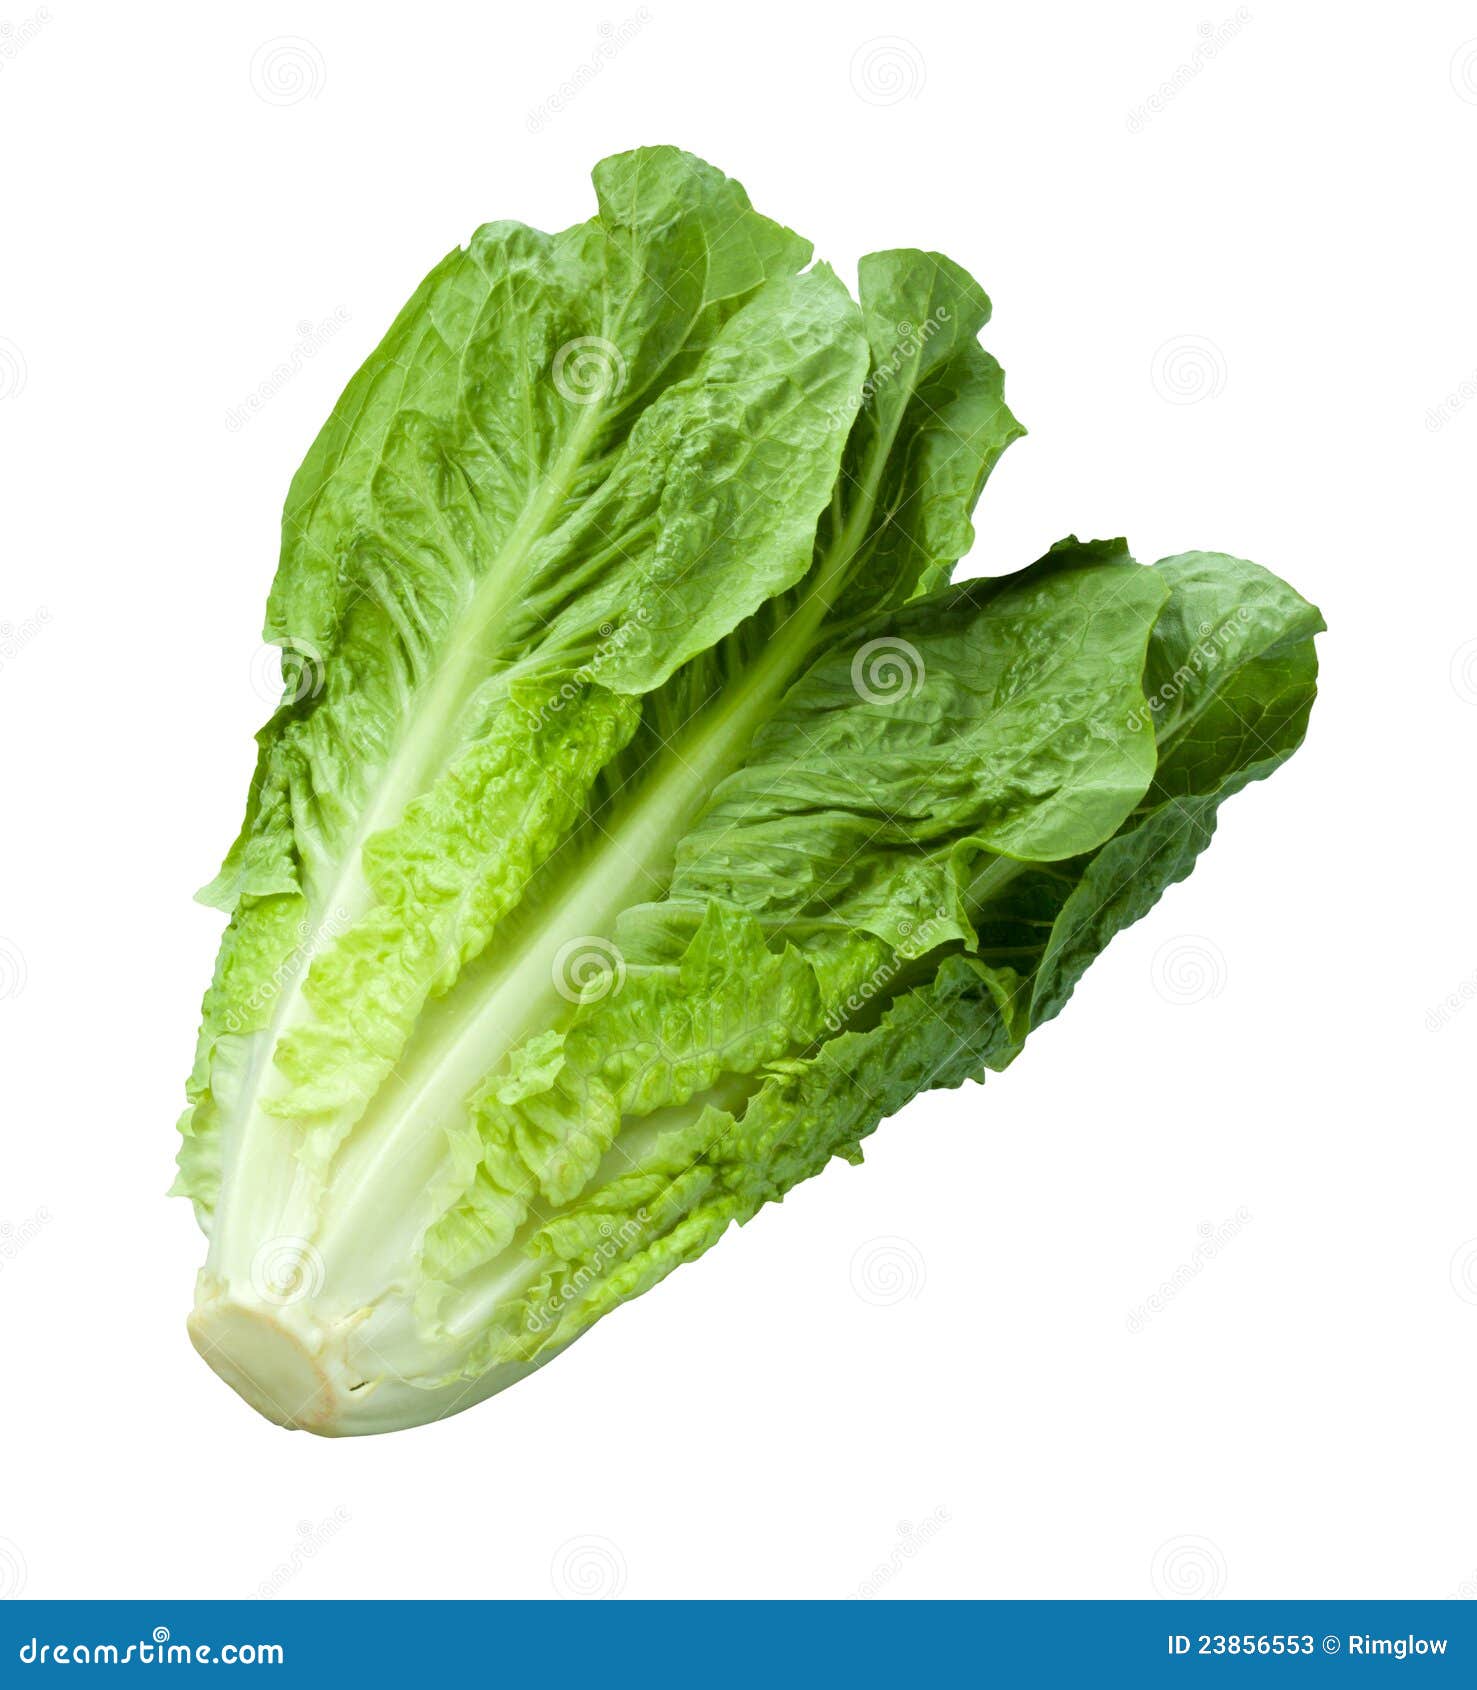 romain lettuce  on white